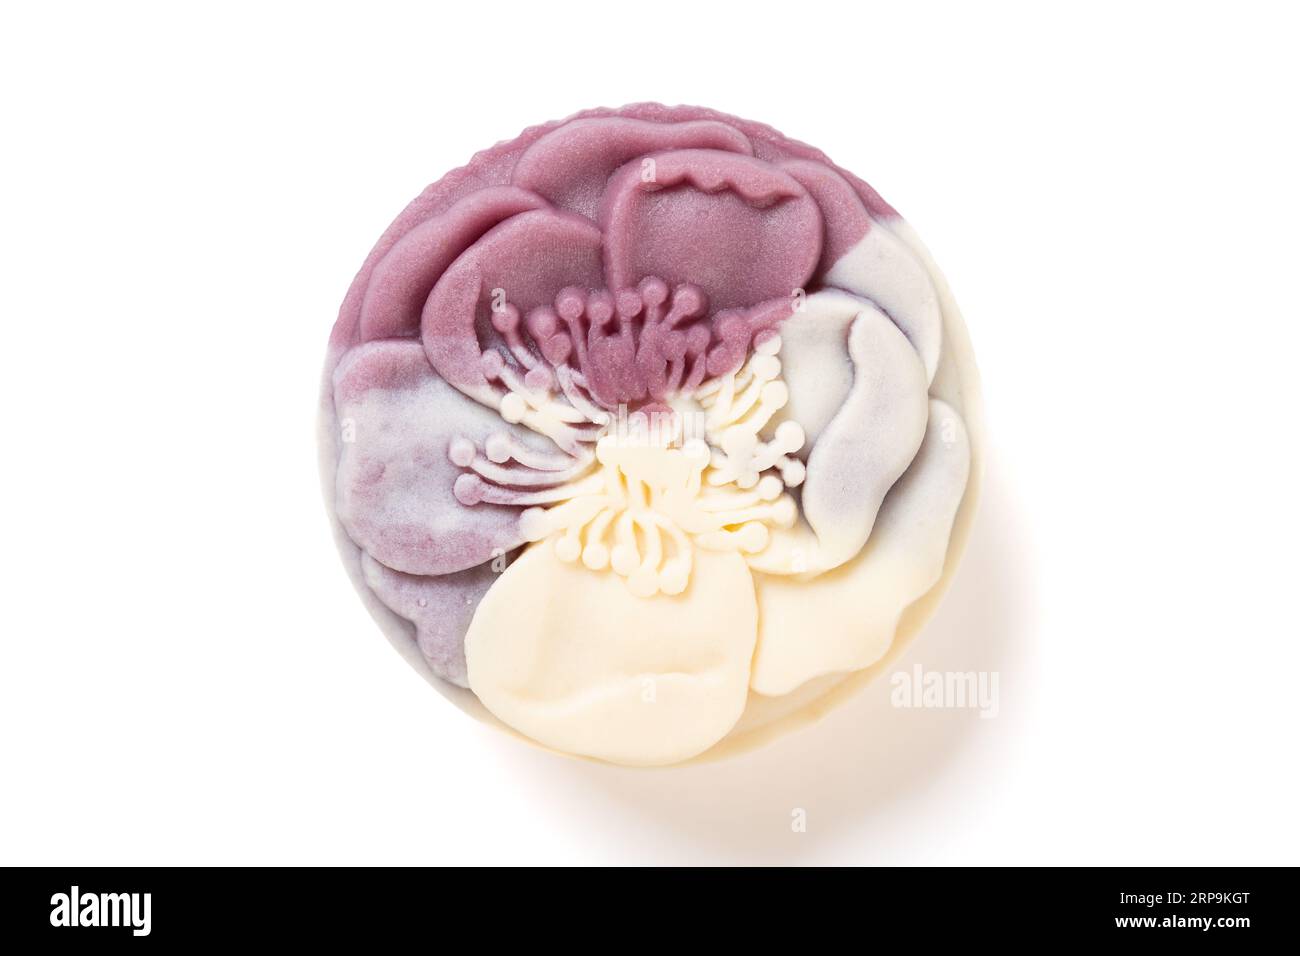 vista dall'alto elegante e bellissima torta luna dai colori viola e bianco a forma di fiore su sfondo bianco Foto Stock